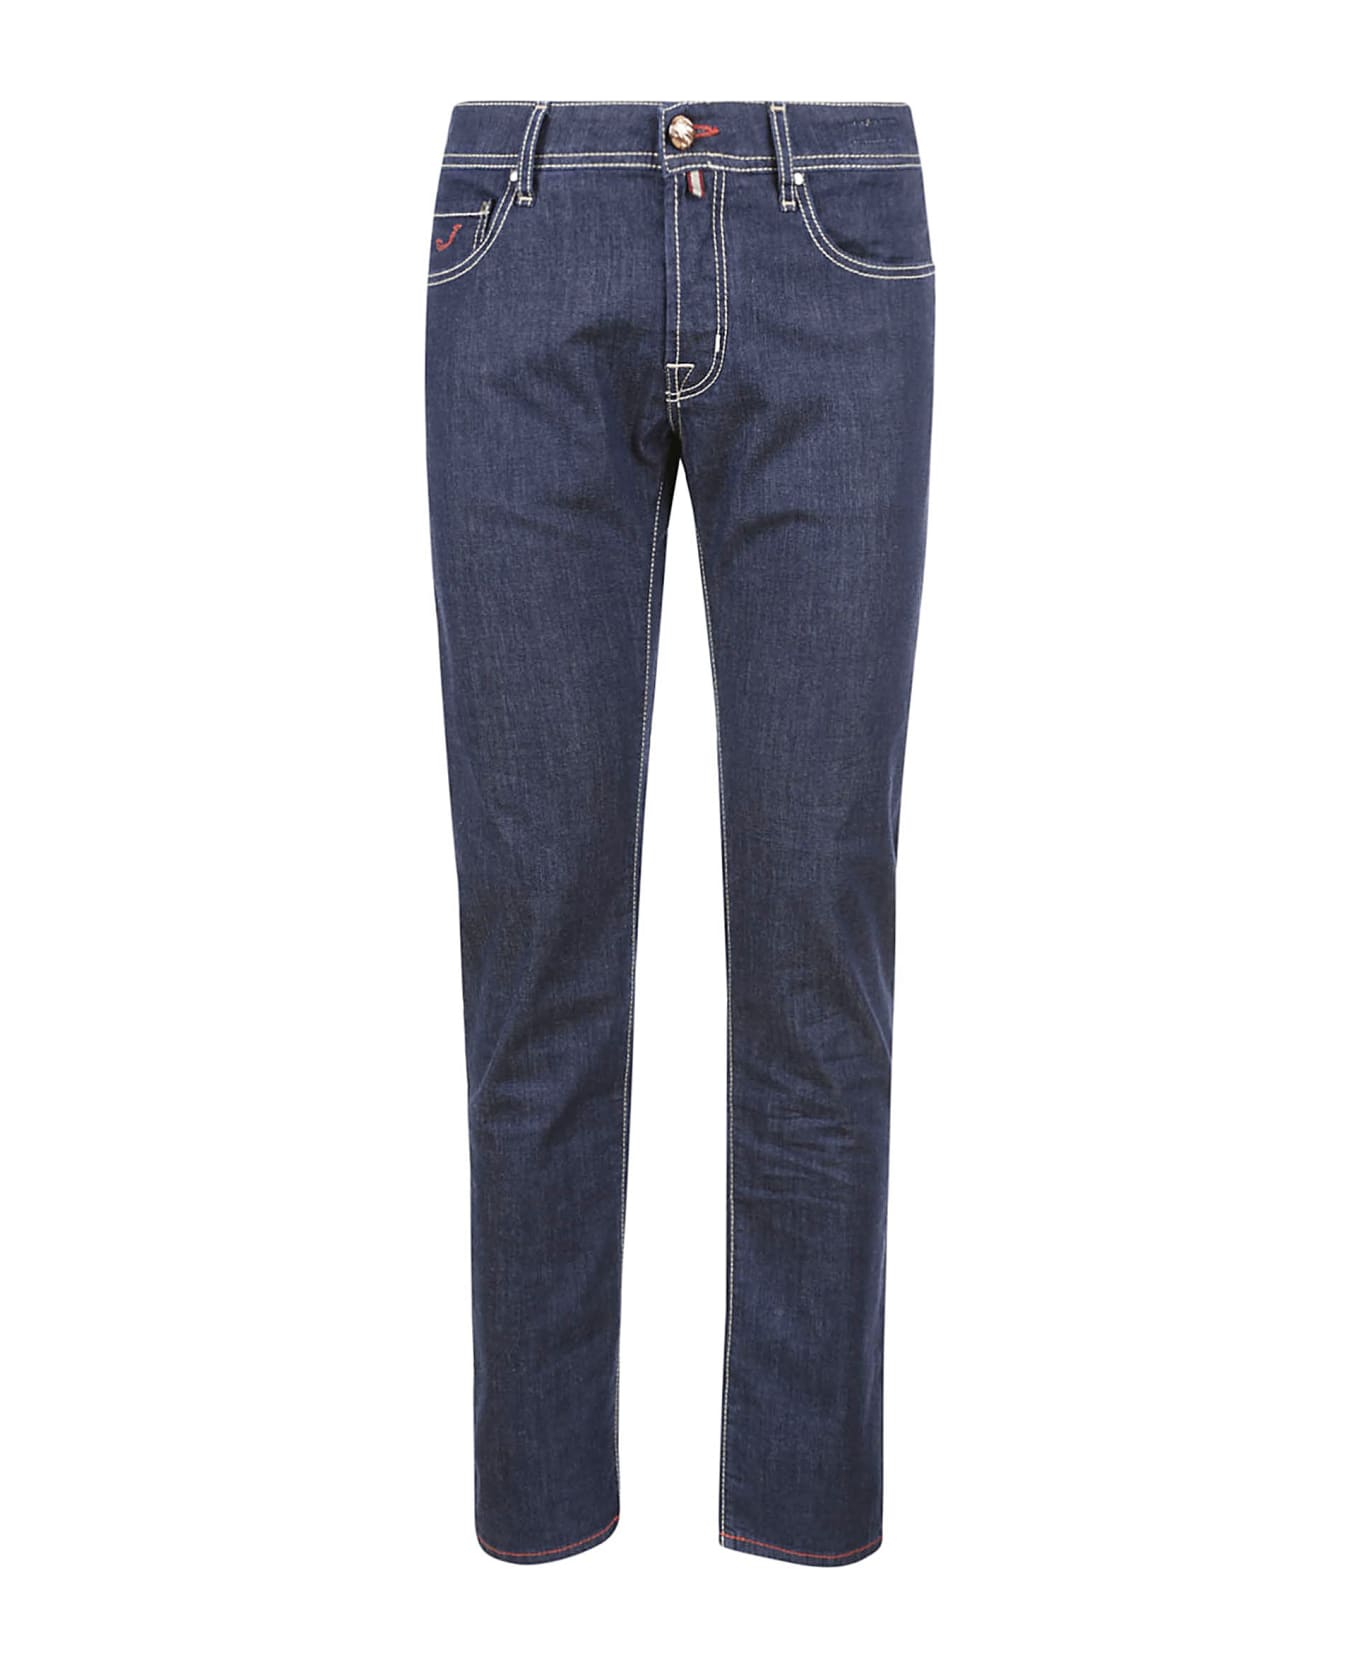 Jacob Cohen Super Slim Fit Jeans - DENIM